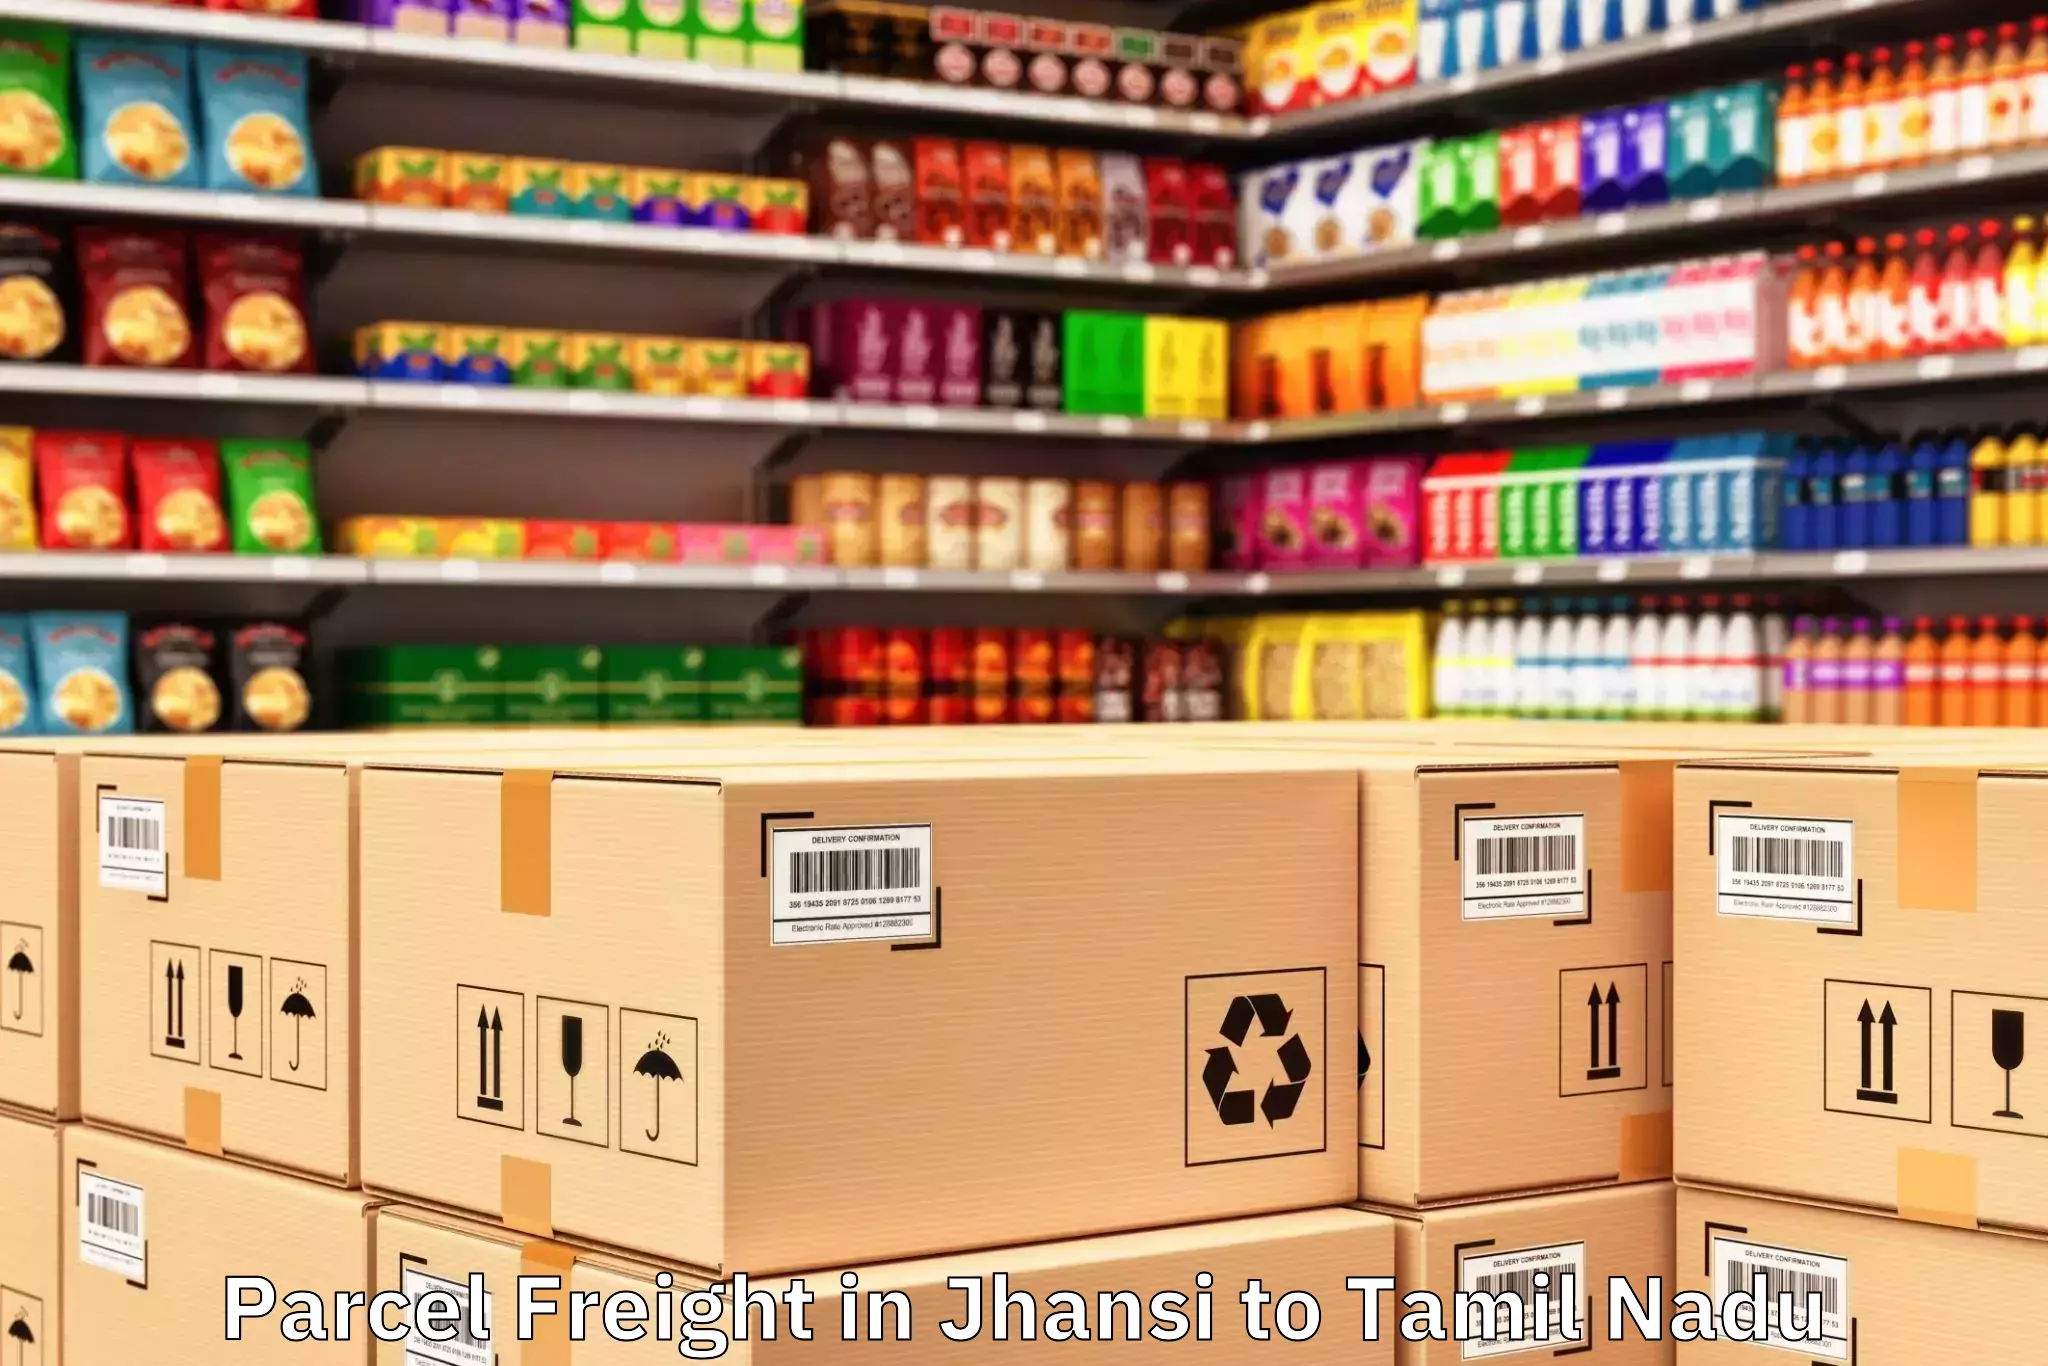 Efficient Jhansi to Iiit Tiruchirappalli Parcel Freight